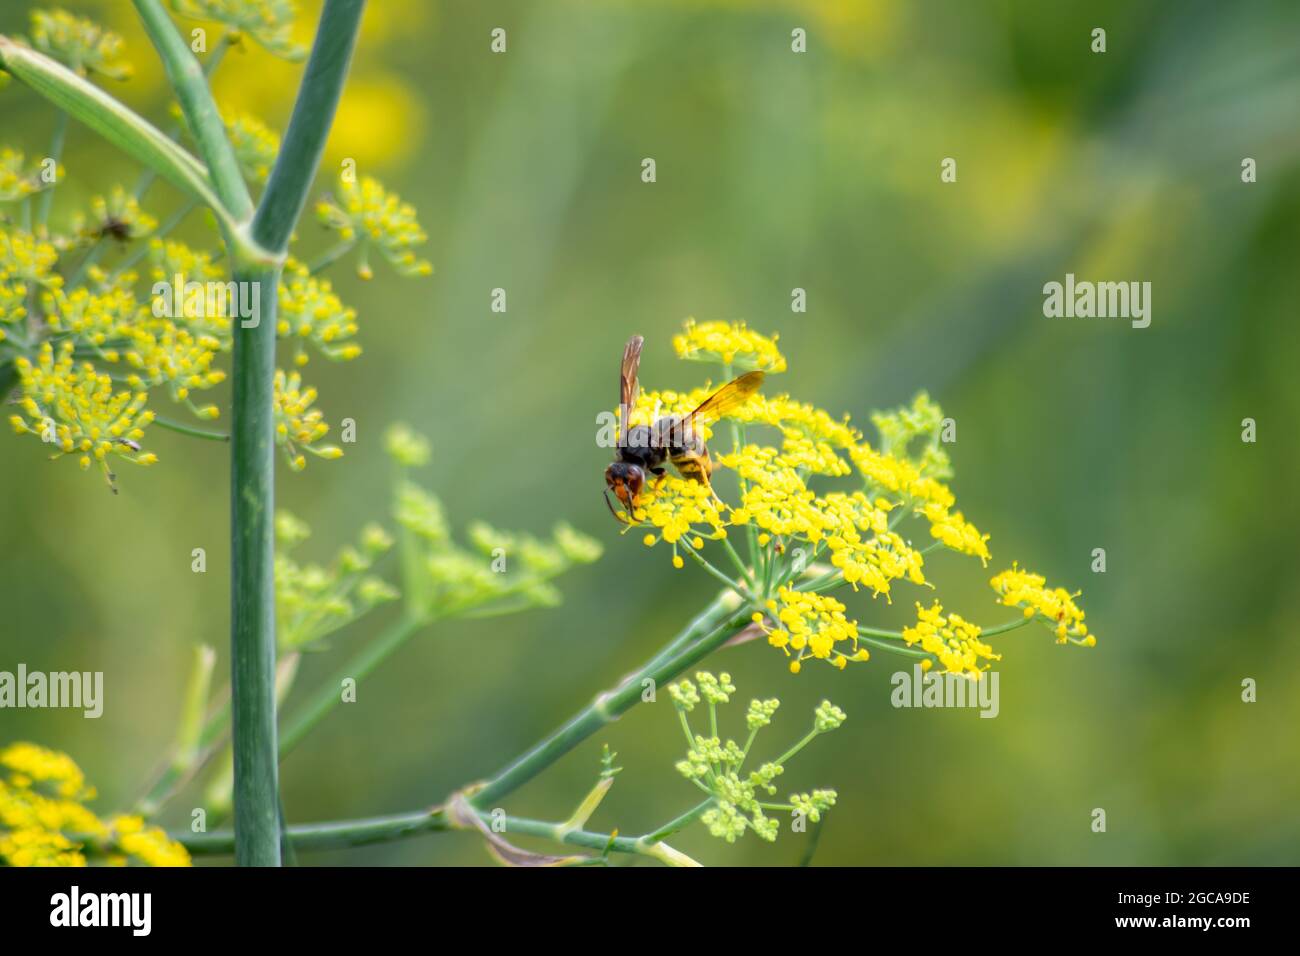 Il calabrone asiatico, noto anche come calabrone a zampe gialle o vespa predatoria asiatica, è una specie di calabrone indigena del Sud-est asiatico. Peste del Regno Unito Foto Stock